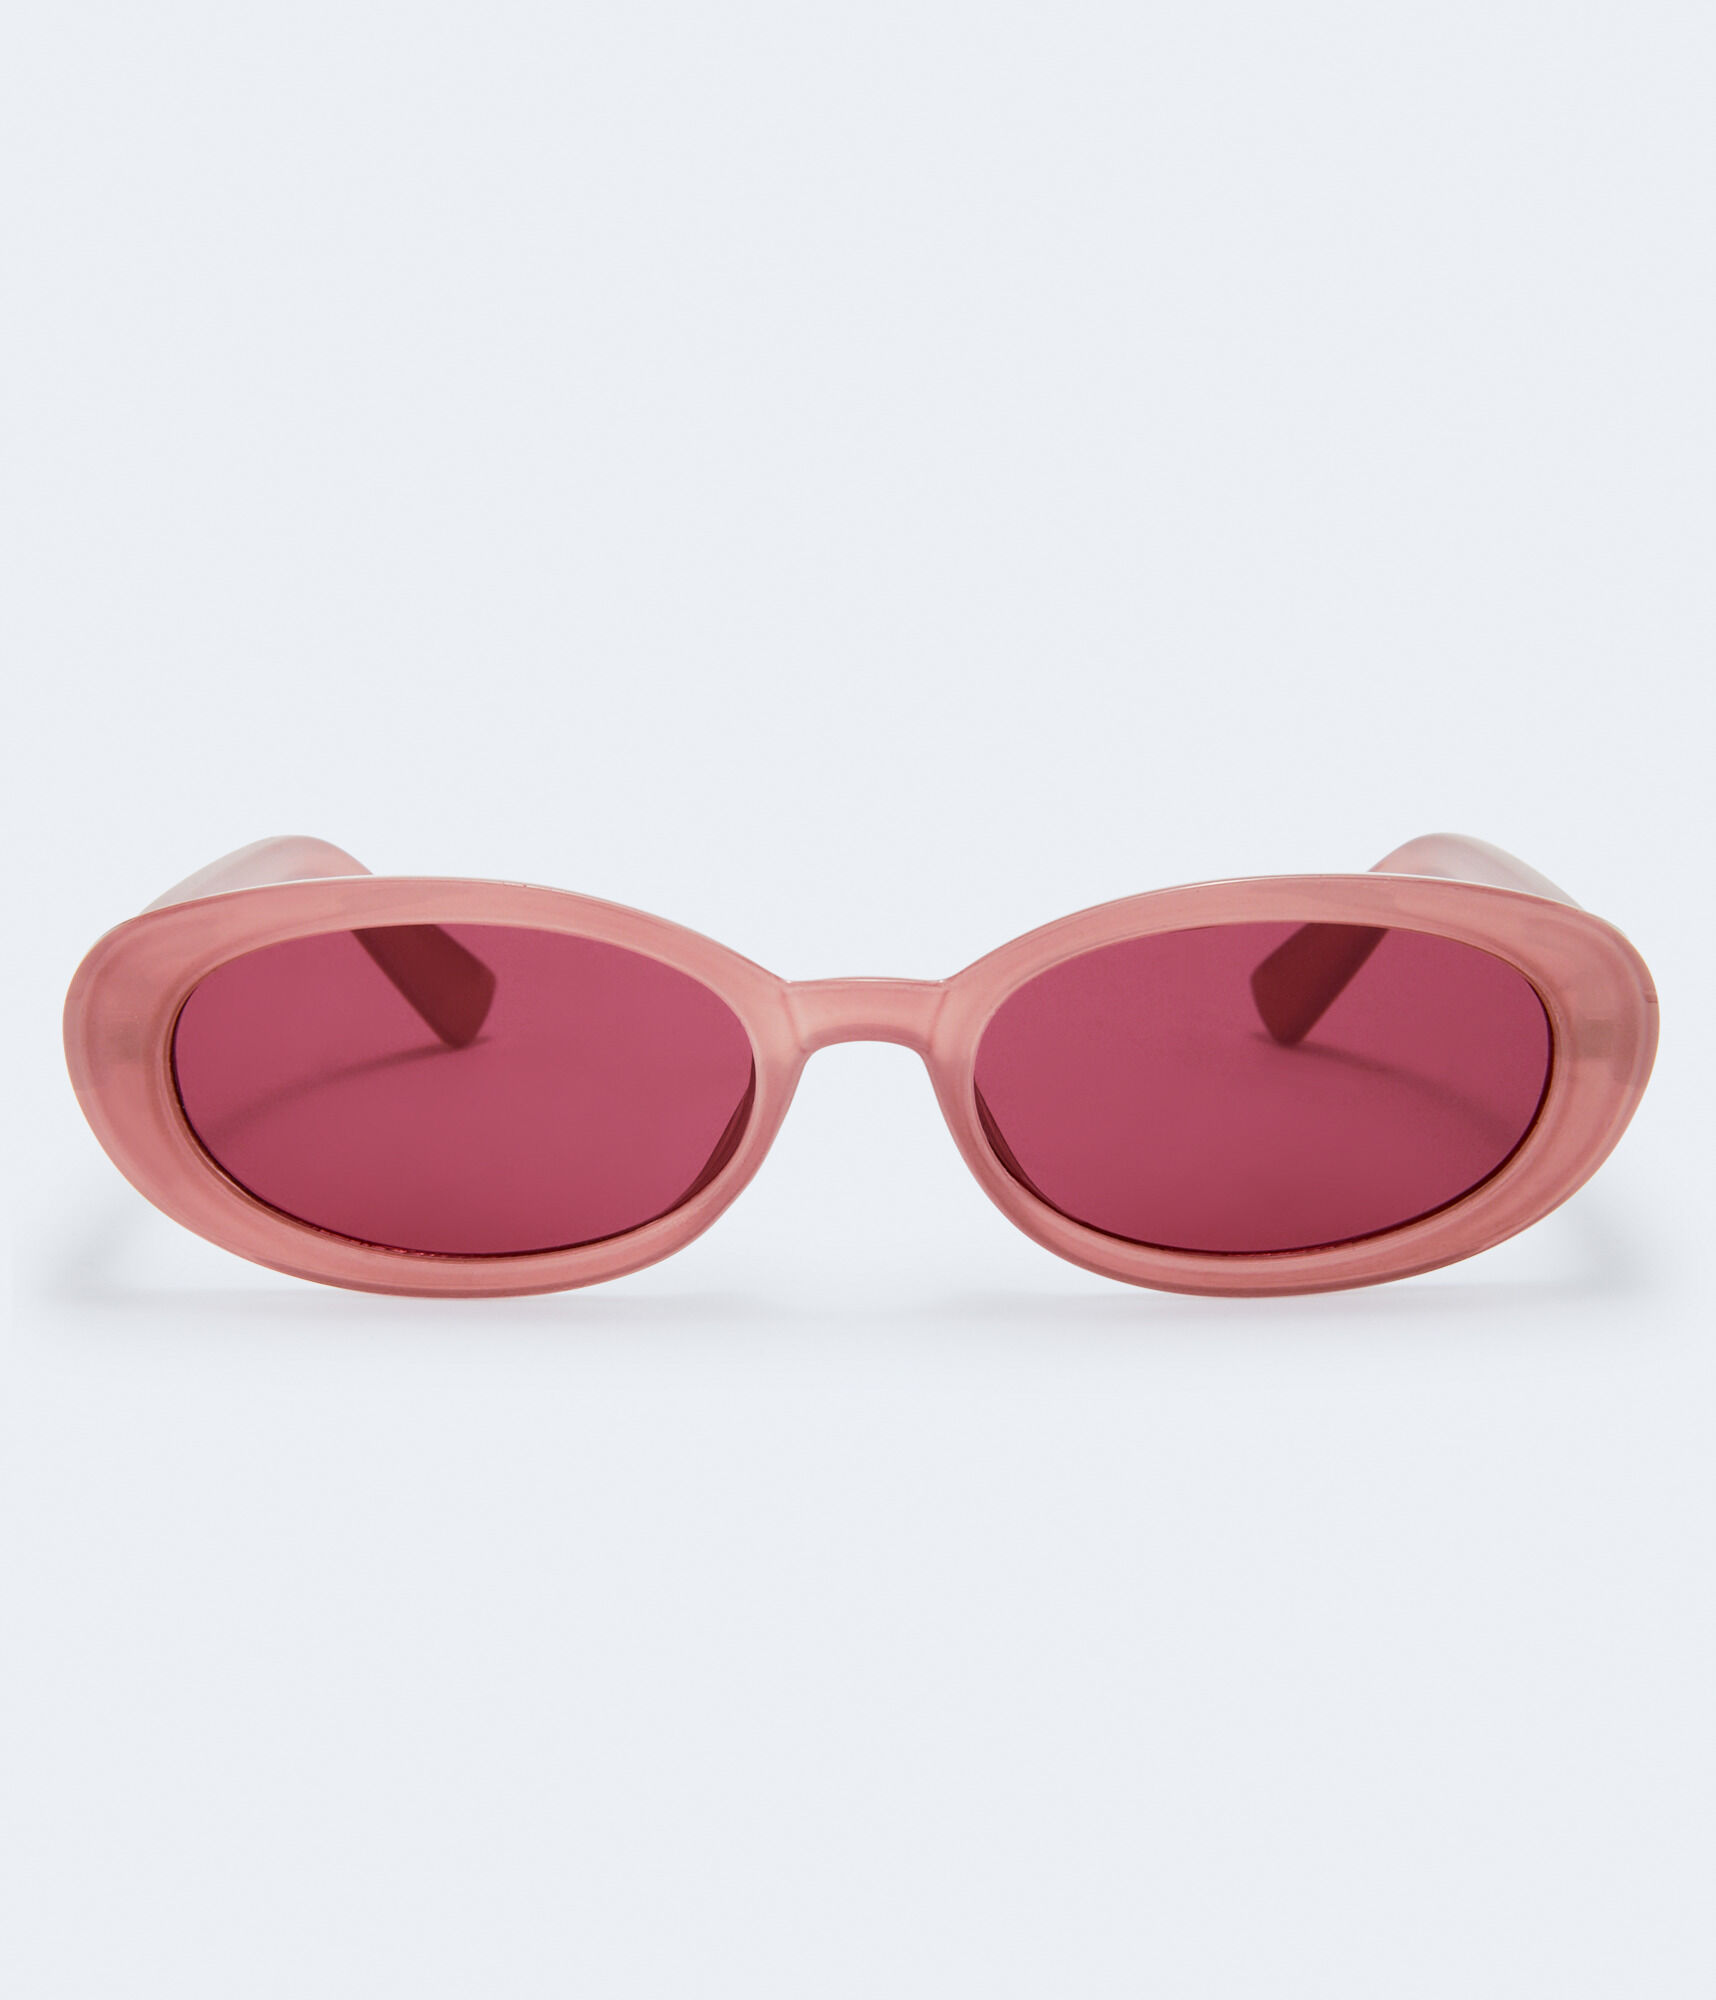 Узкие овальные солнцезащитные очки Aeropostale, розовый